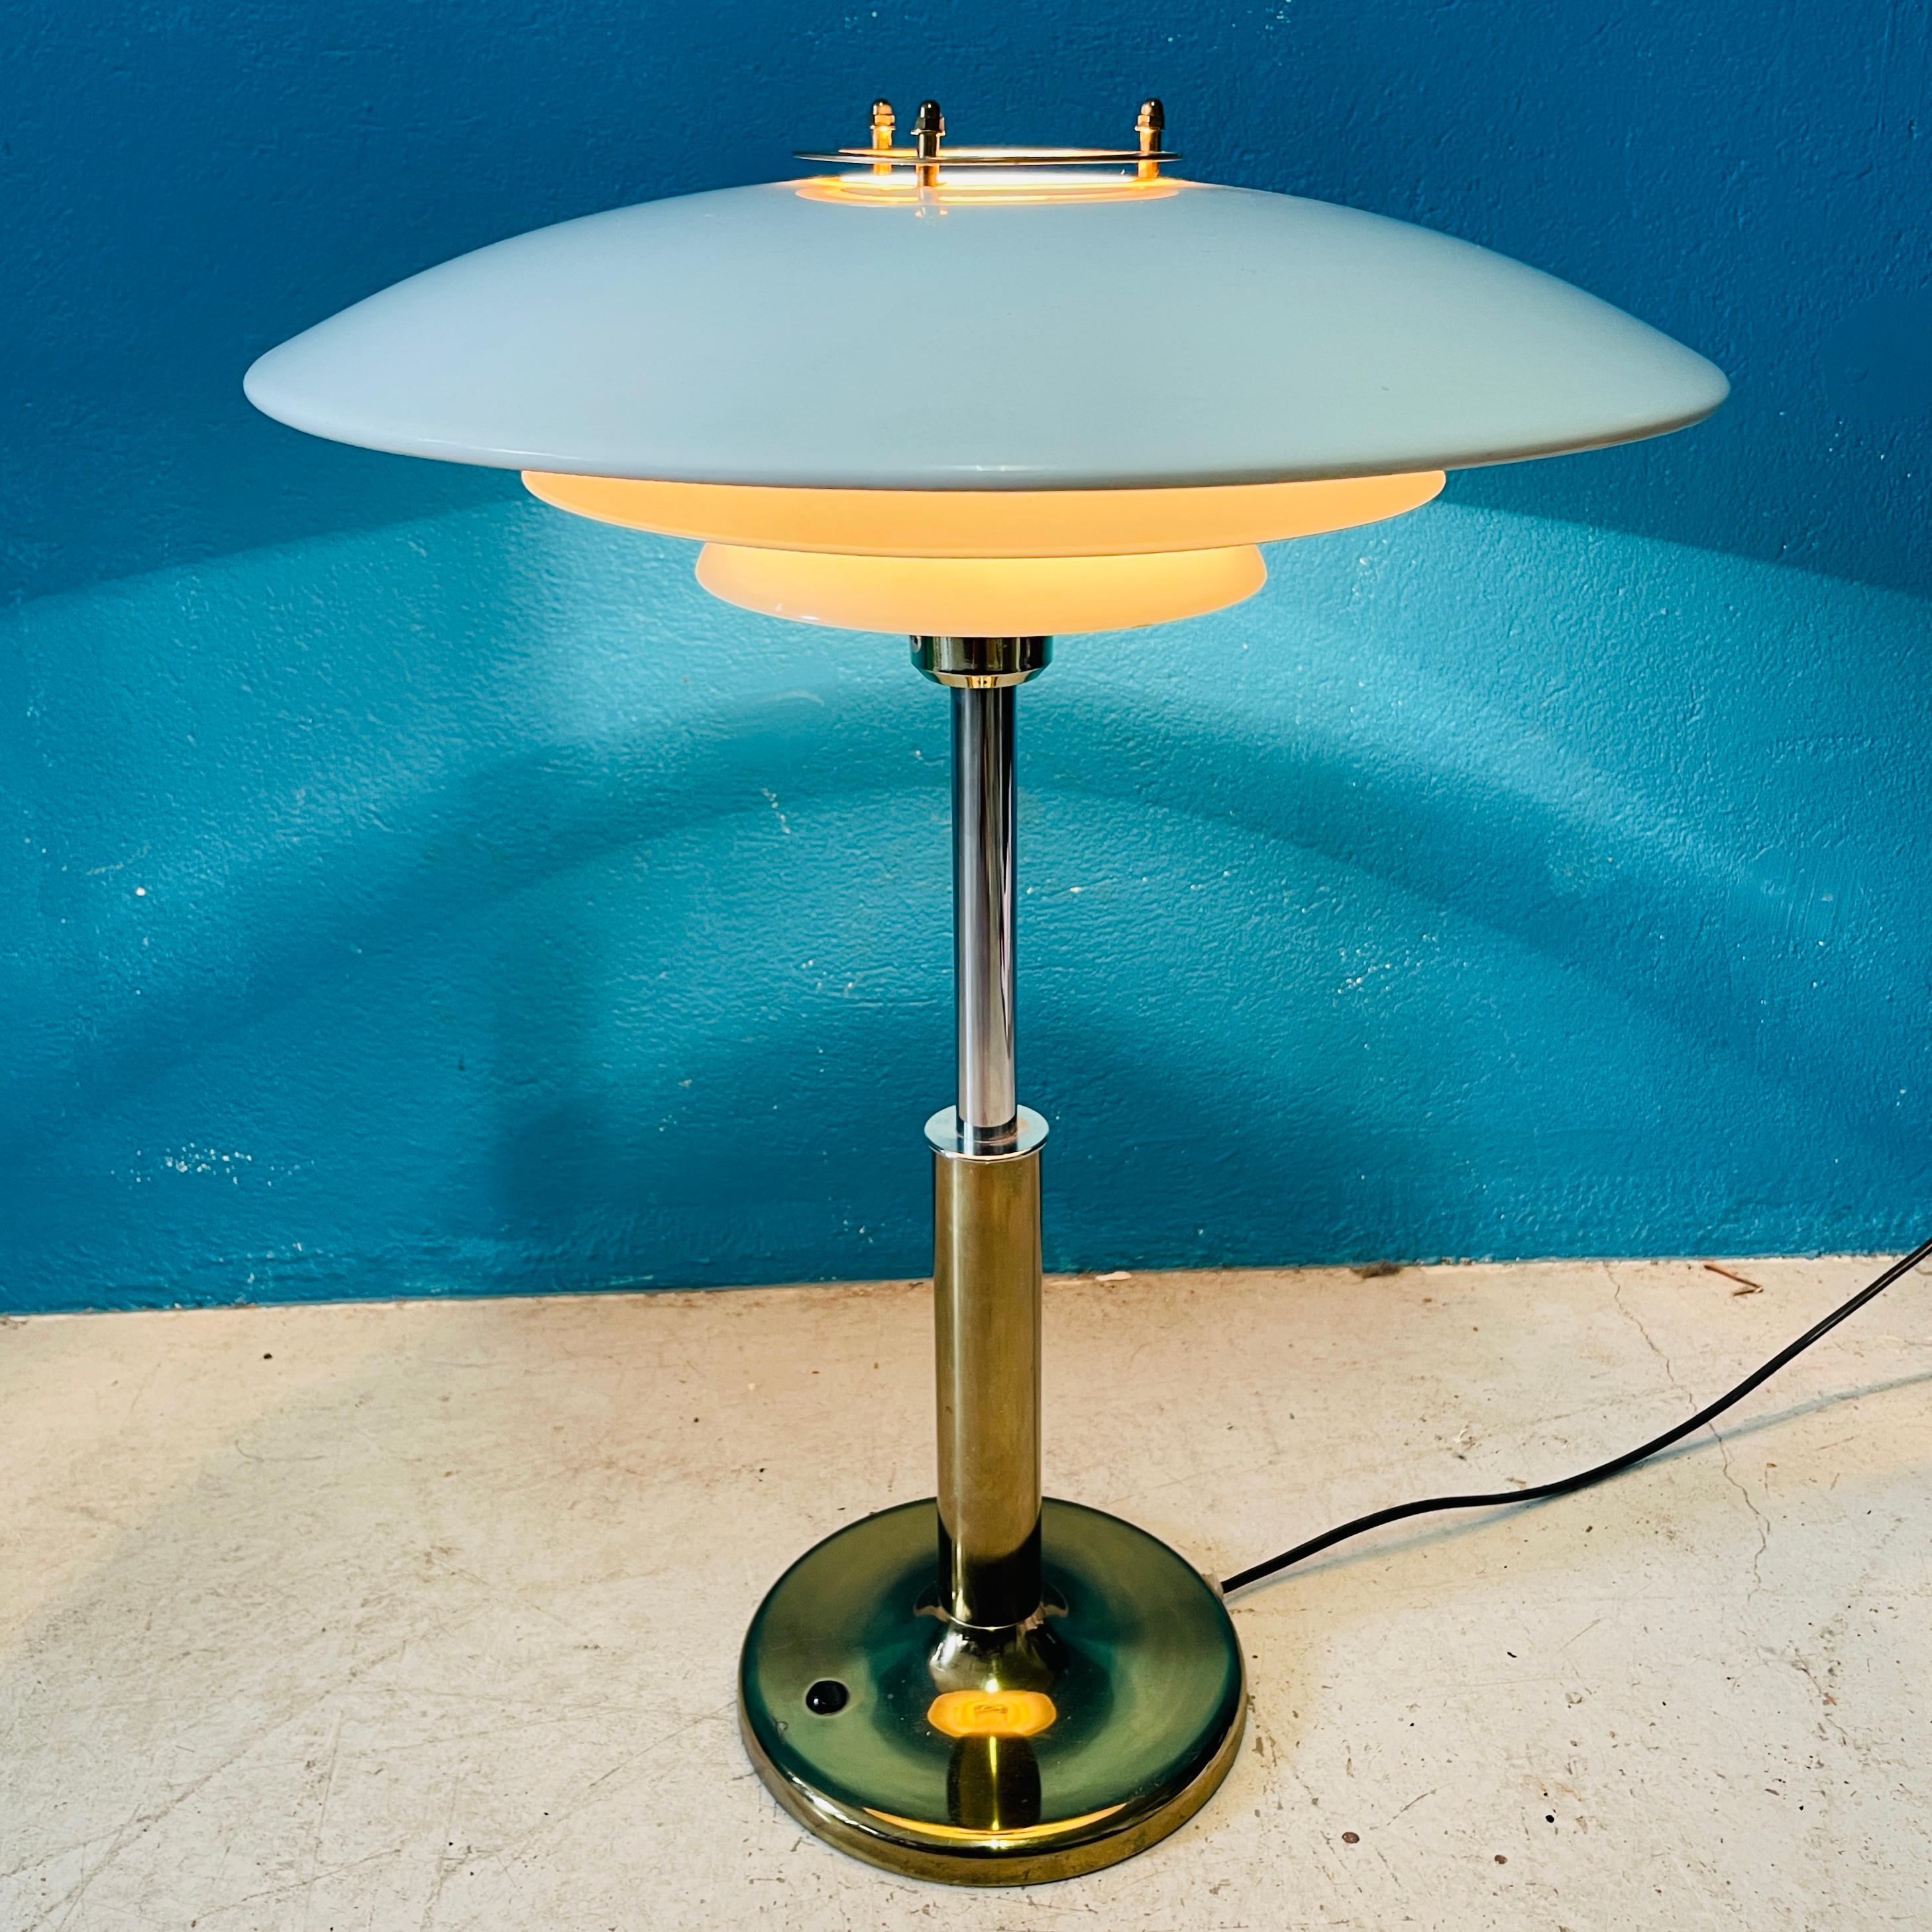 Magnifique lampe de table des années 1980. Fabriqué en Finlande, mais le designer est inconnu. 

Couleurs et MATERIALs élégants : La base et la partie inférieure du bras sont en laiton. La partie supérieure du bras est en acier chromé. 
L'abat-jour